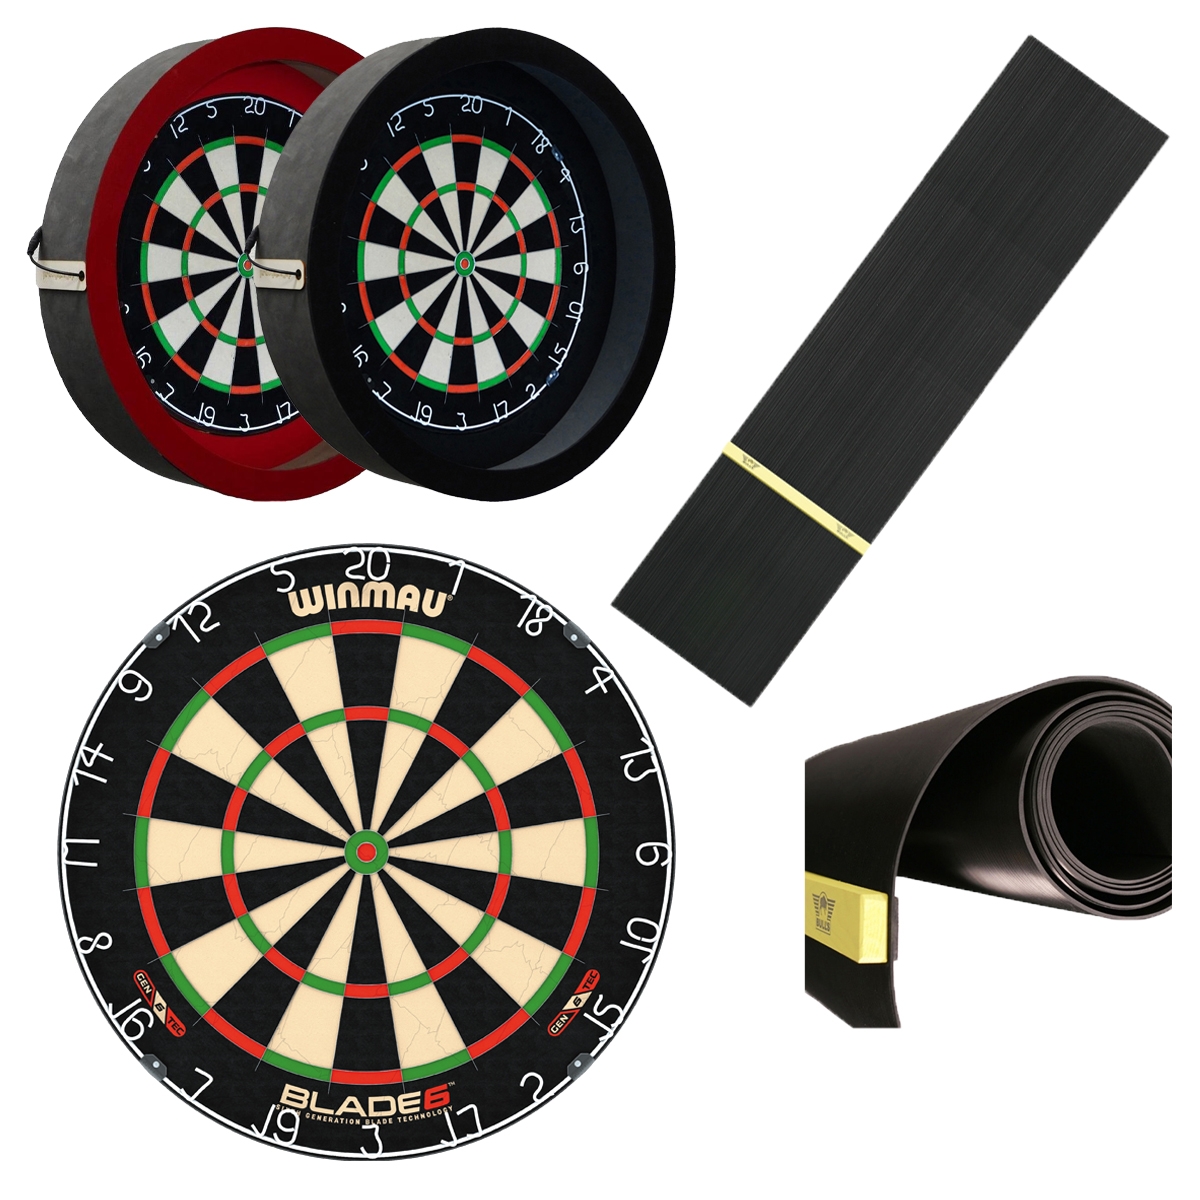 Dragon Darts - Winmau + dartbord verlichting + dartmat rubber 300*60 inclusief oche - deDartshop.nl